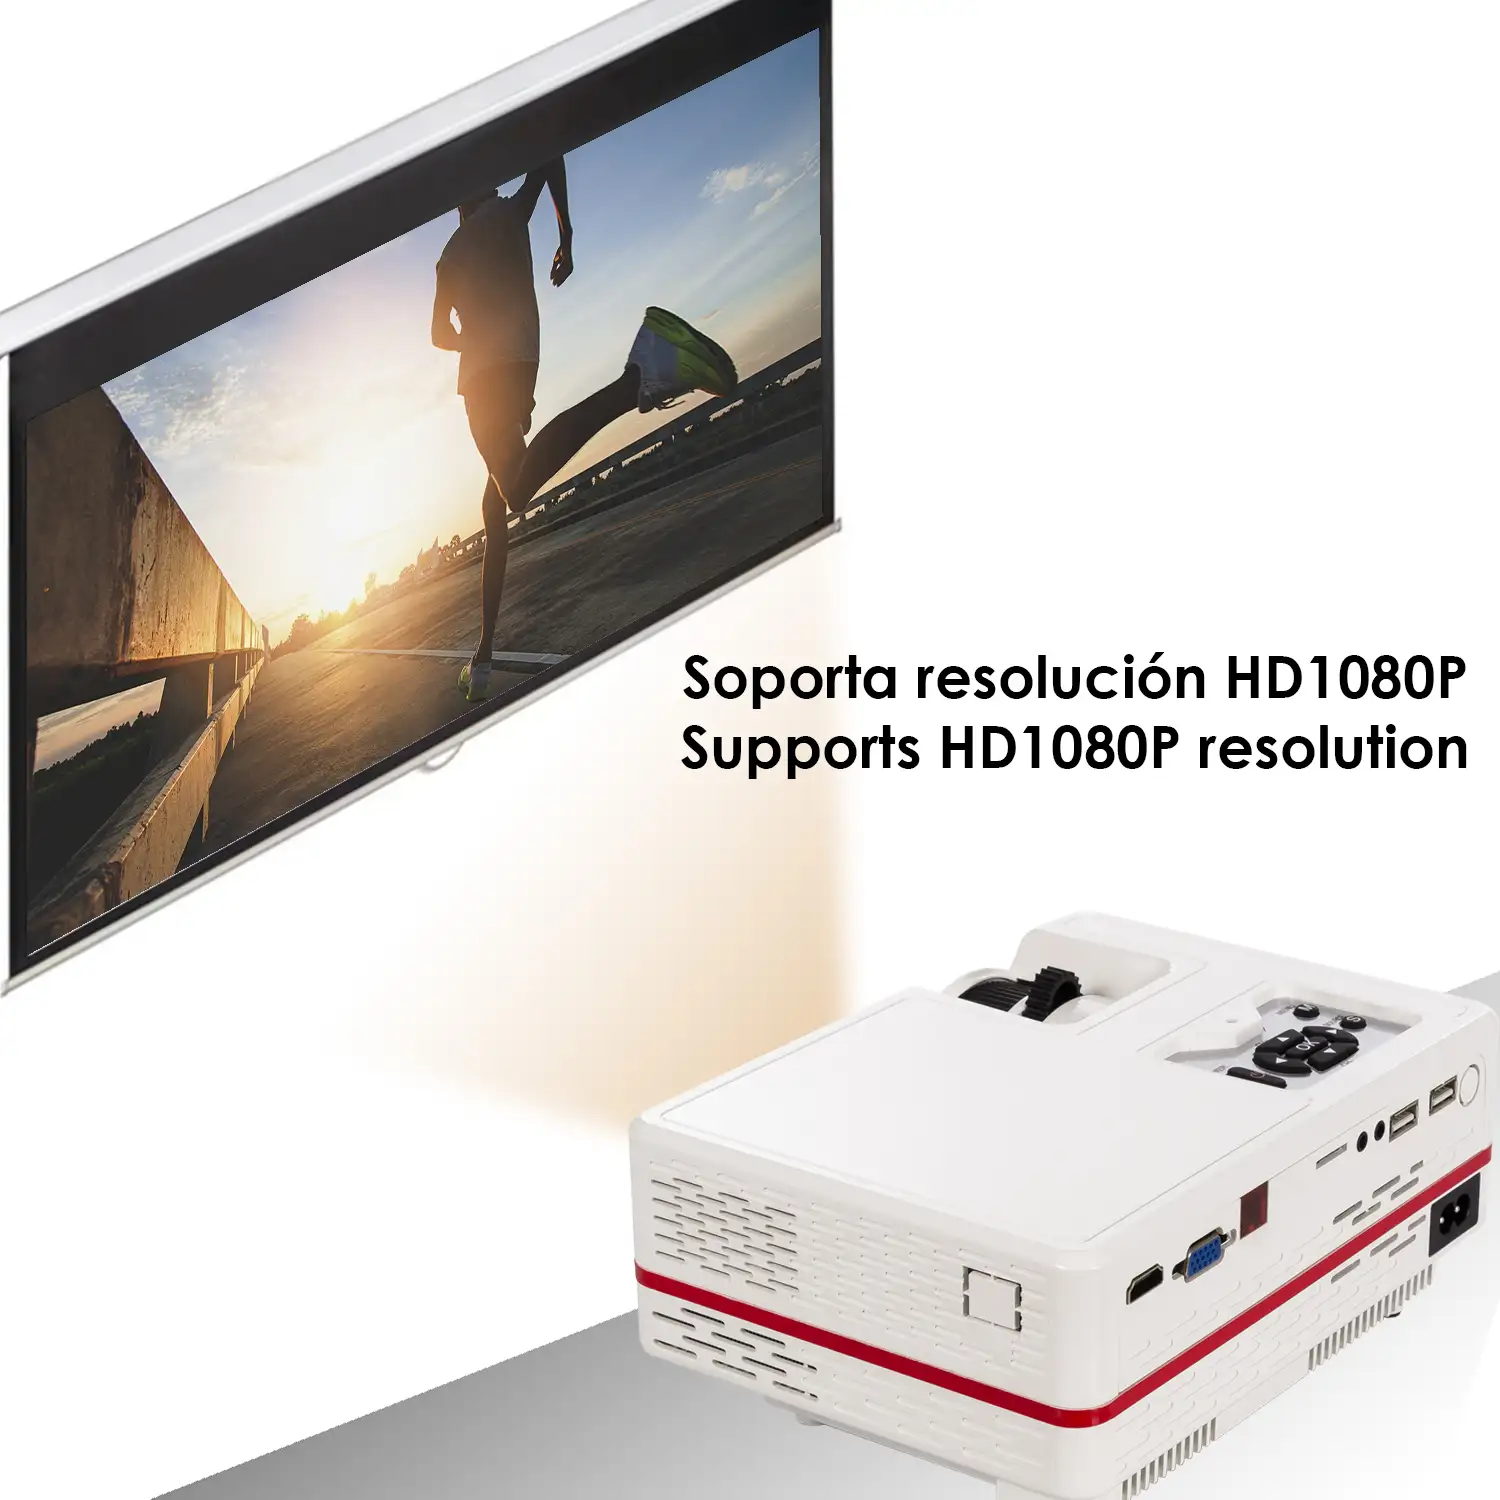 Video proyector LED hasta 150 pulgadas, contraste 3000:1. Conexiones HDMI, USB, incluye entrada de antena. Mando a distancia.